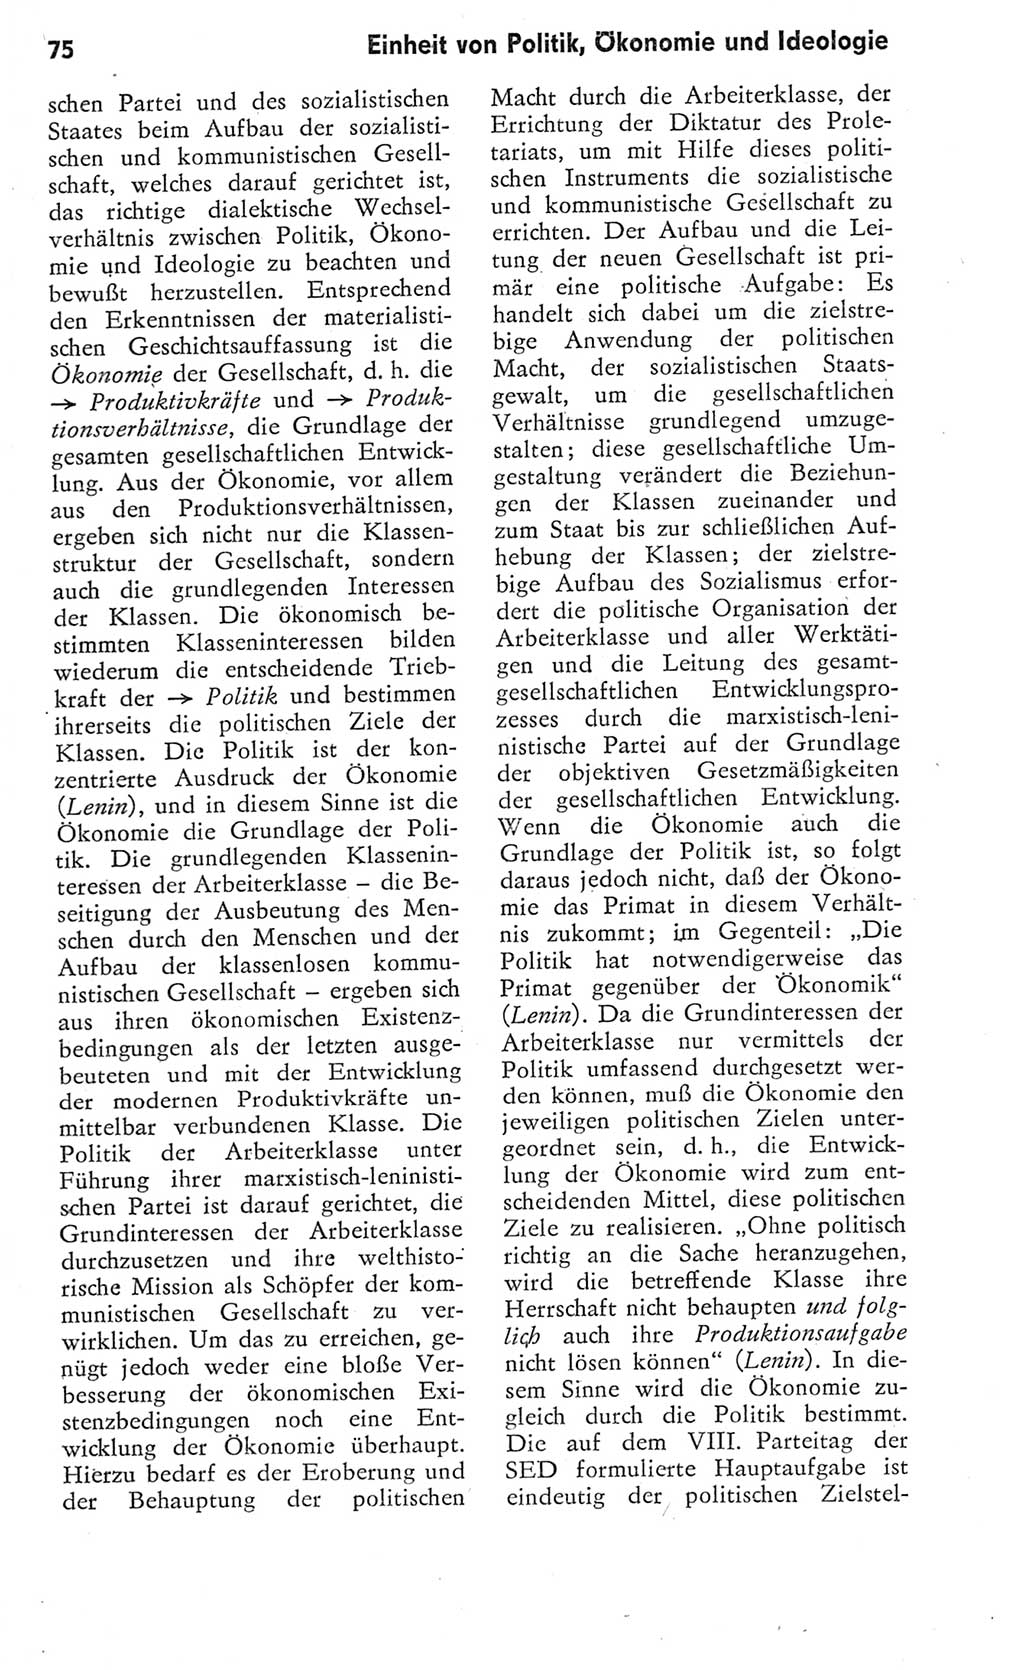 Kleines Wörterbuch der marxistisch-leninistischen Philosophie [Deutsche Demokratische Republik (DDR)] 1975, Seite 75 (Kl. Wb. ML Phil. DDR 1975, S. 75)